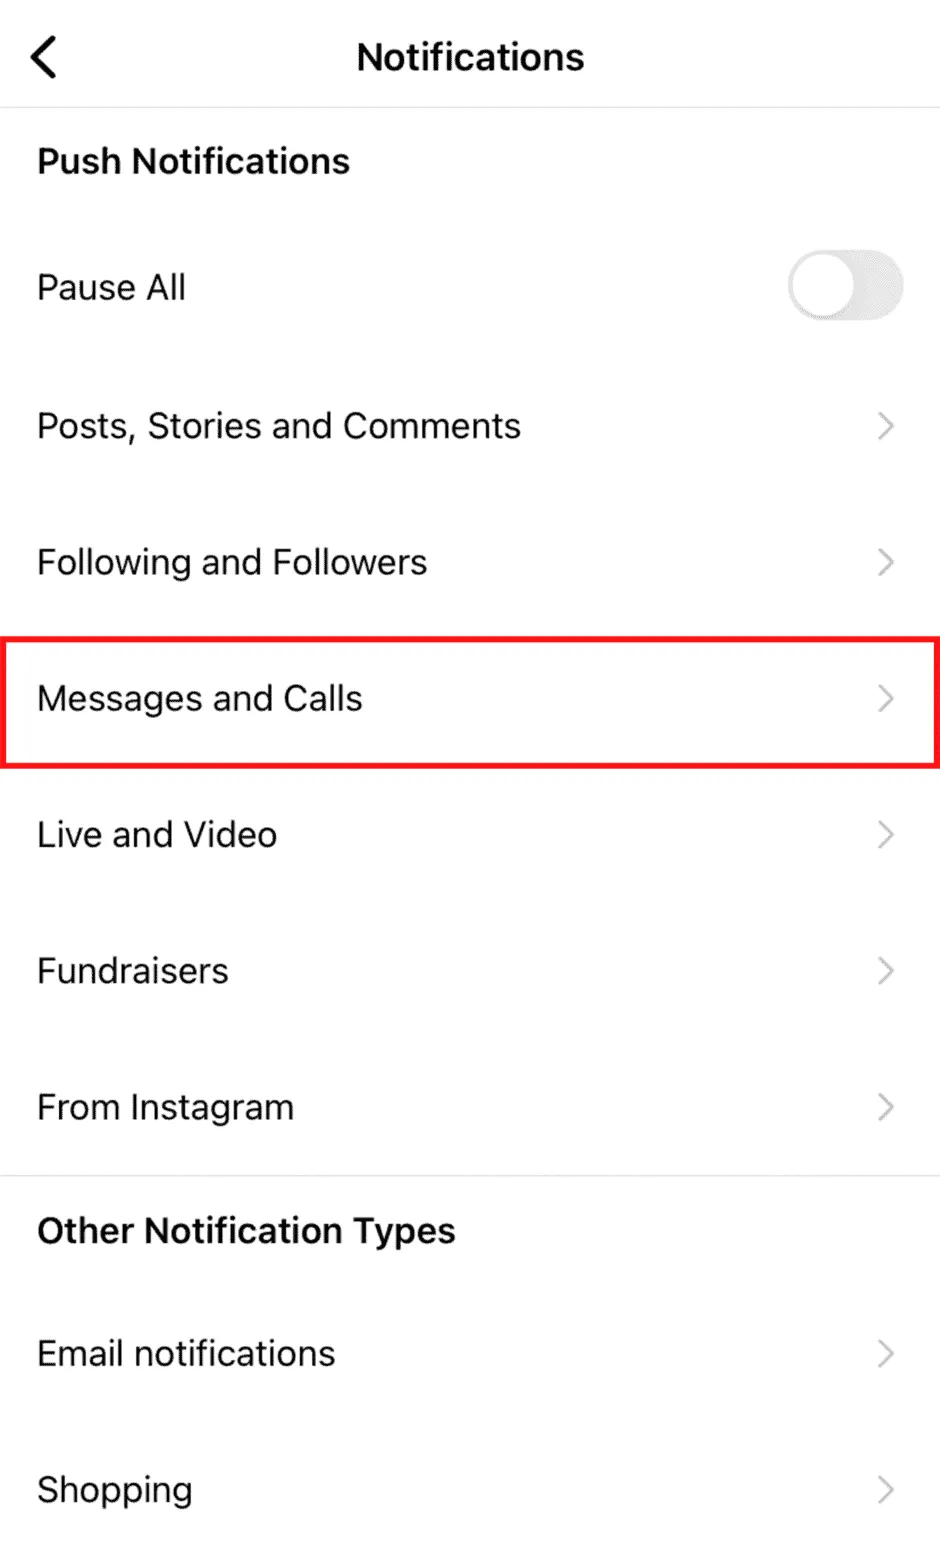 Keresse meg az Instagram üzeneteinek és hívásainak szakaszát